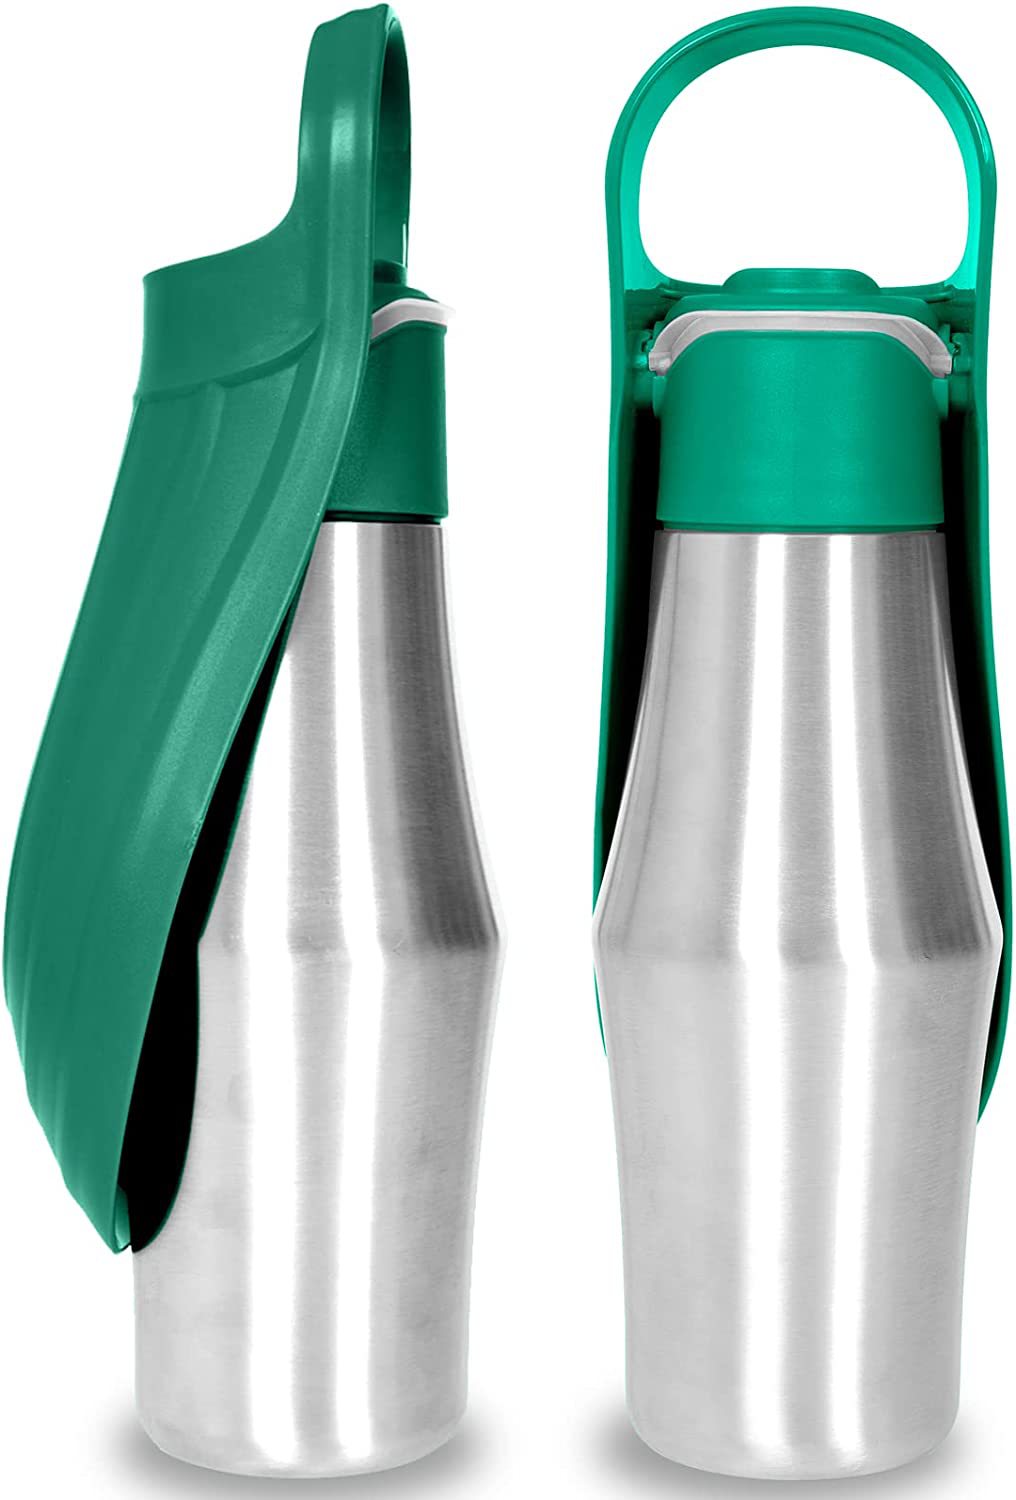 2023 Neue tragbare Haustier Hundewasserflasche./2023 New Portable Pet Dog Water Bottle